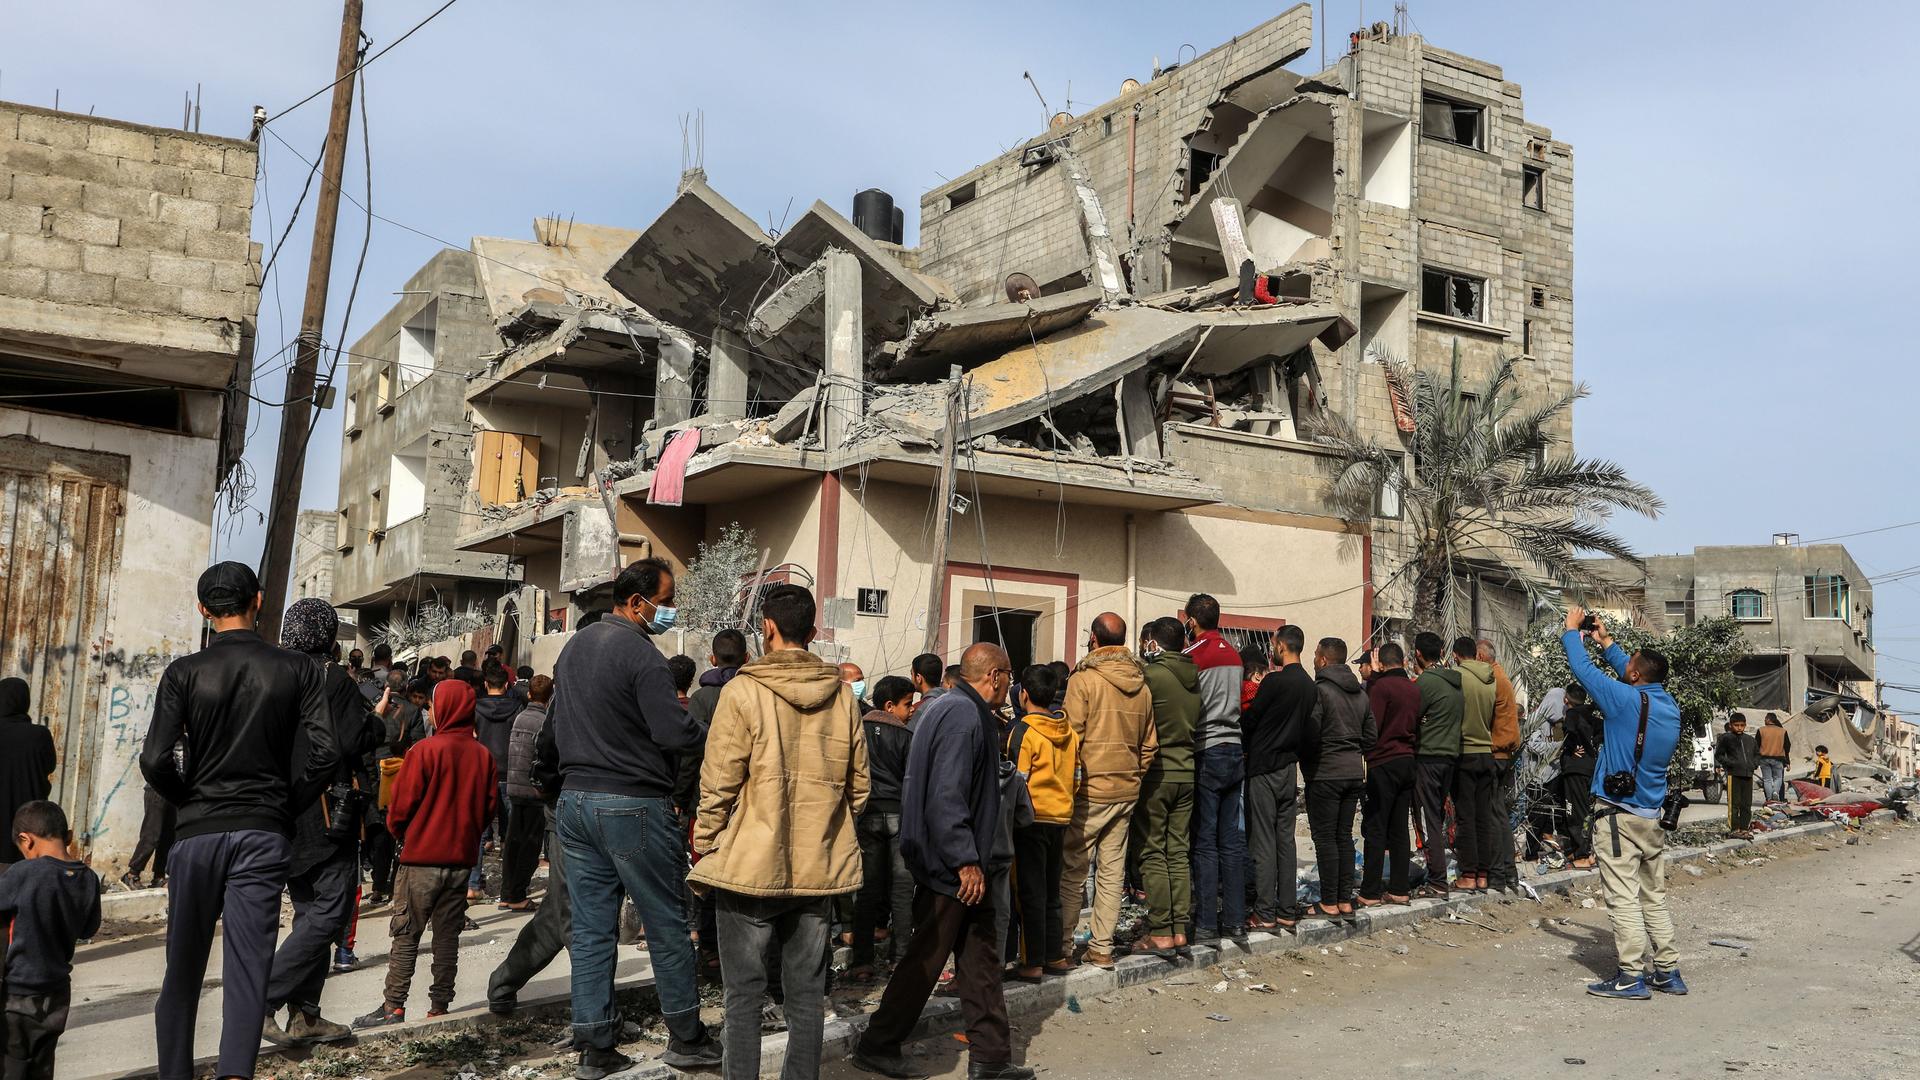 Palästinensische Gebiete, Rafah: Palästinenser versammeln sich nach einem israelischen Luftangriff um ein zerstörtes Haus einer Familie.